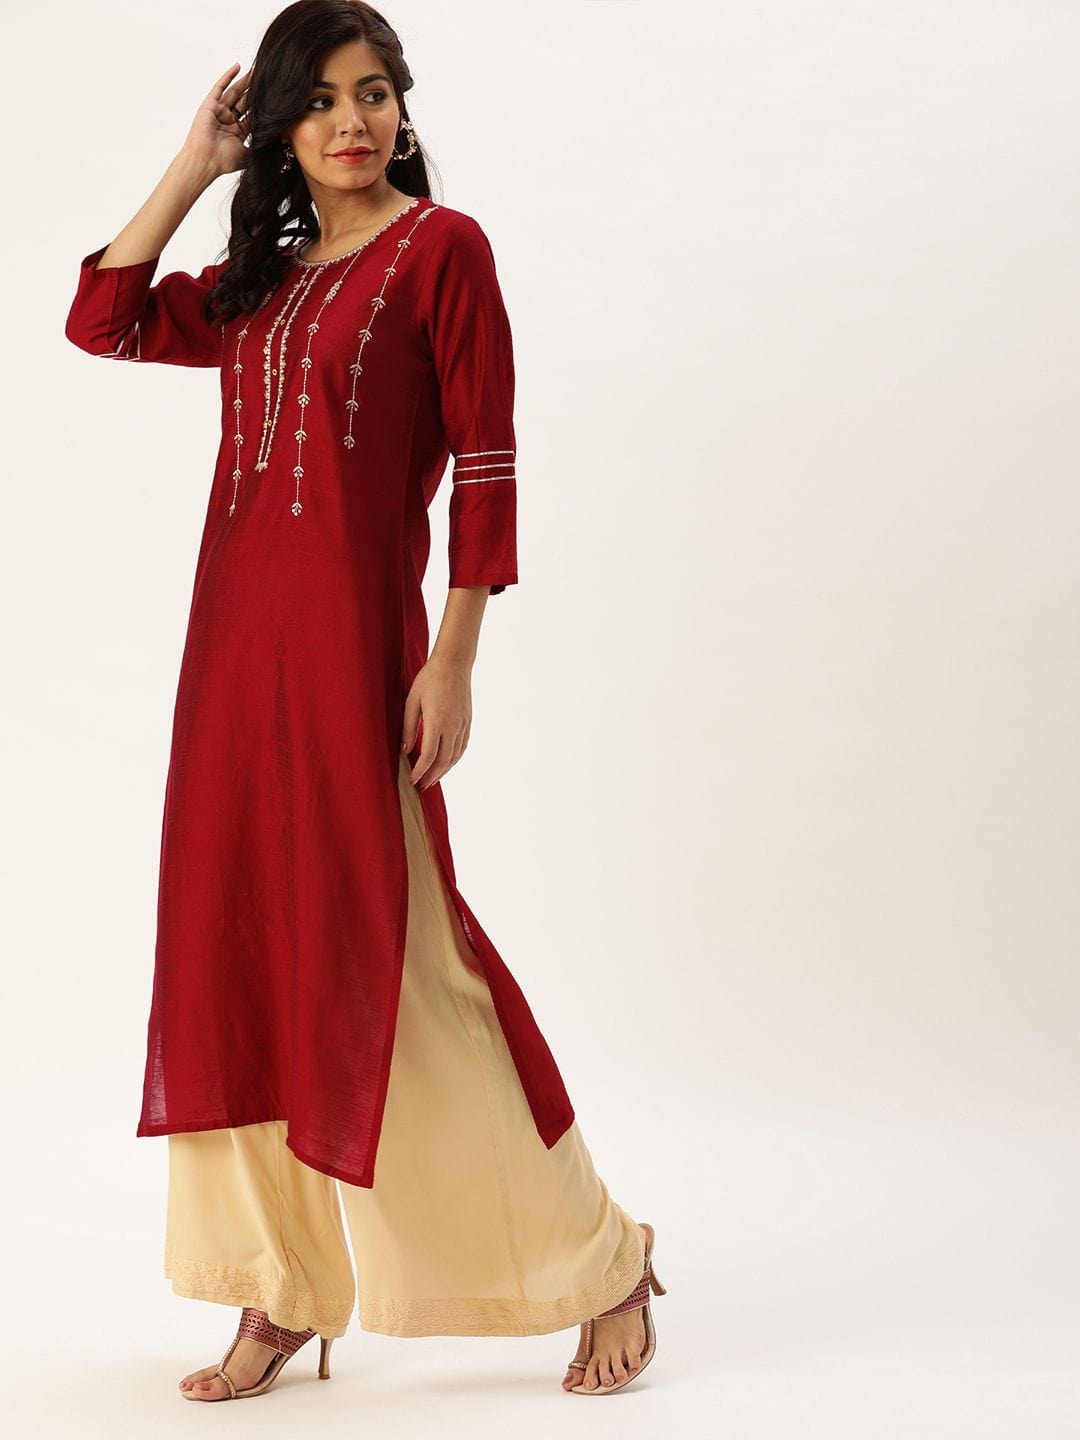 Women's Red & Silver-Toned Embroidered Straight Kurta - Varanga